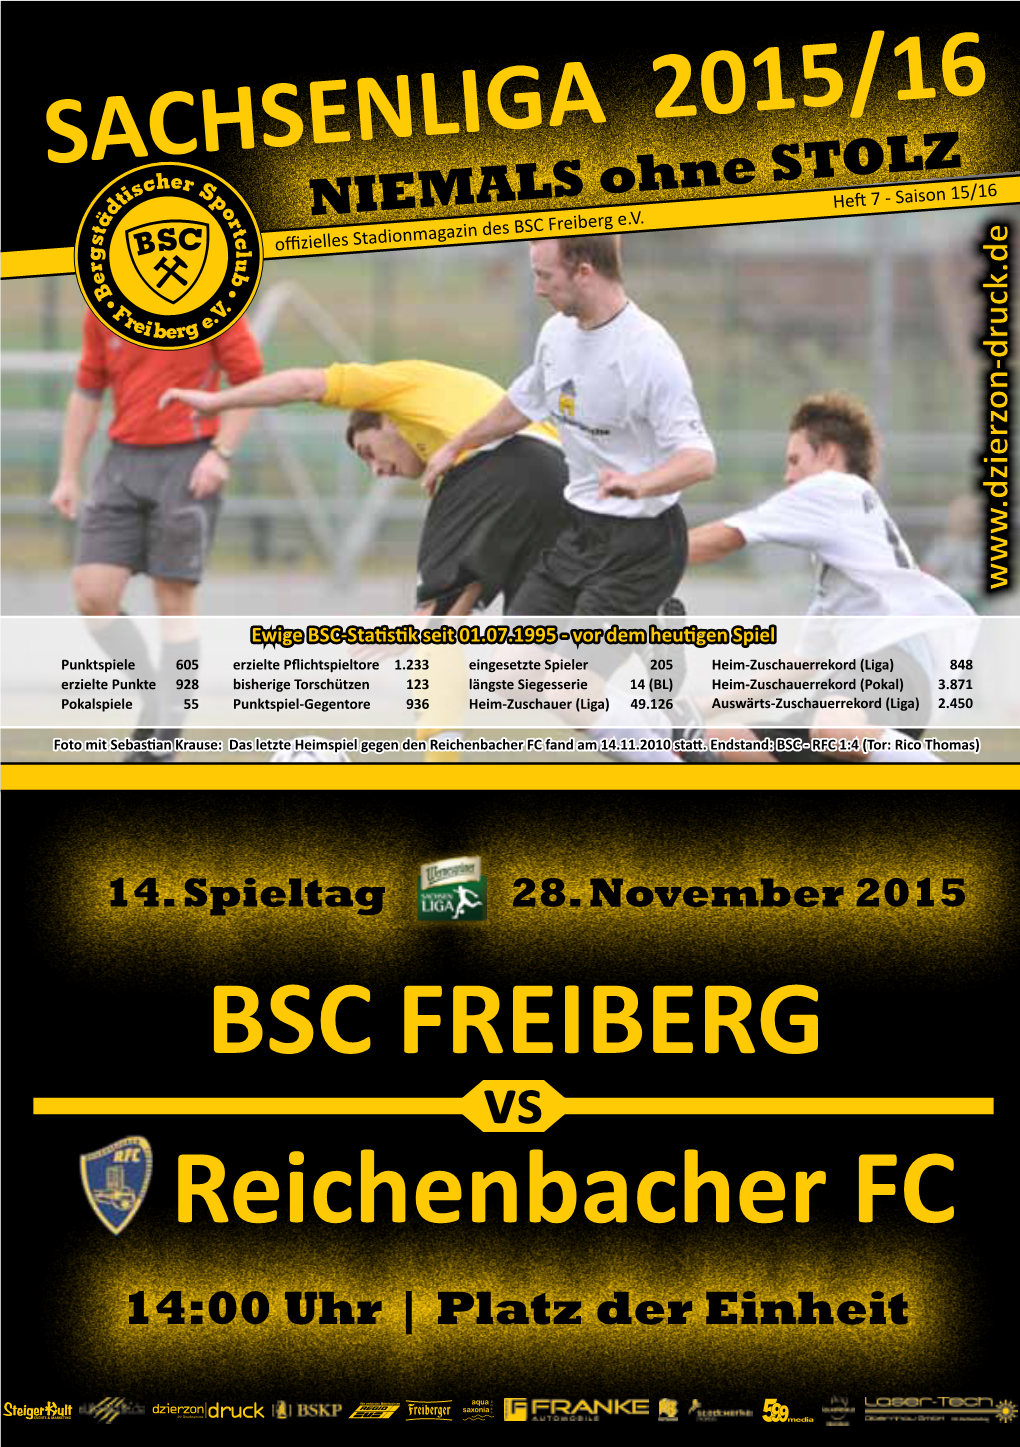 Reichenbacher FC Fand Am 14.11.2010 Statt